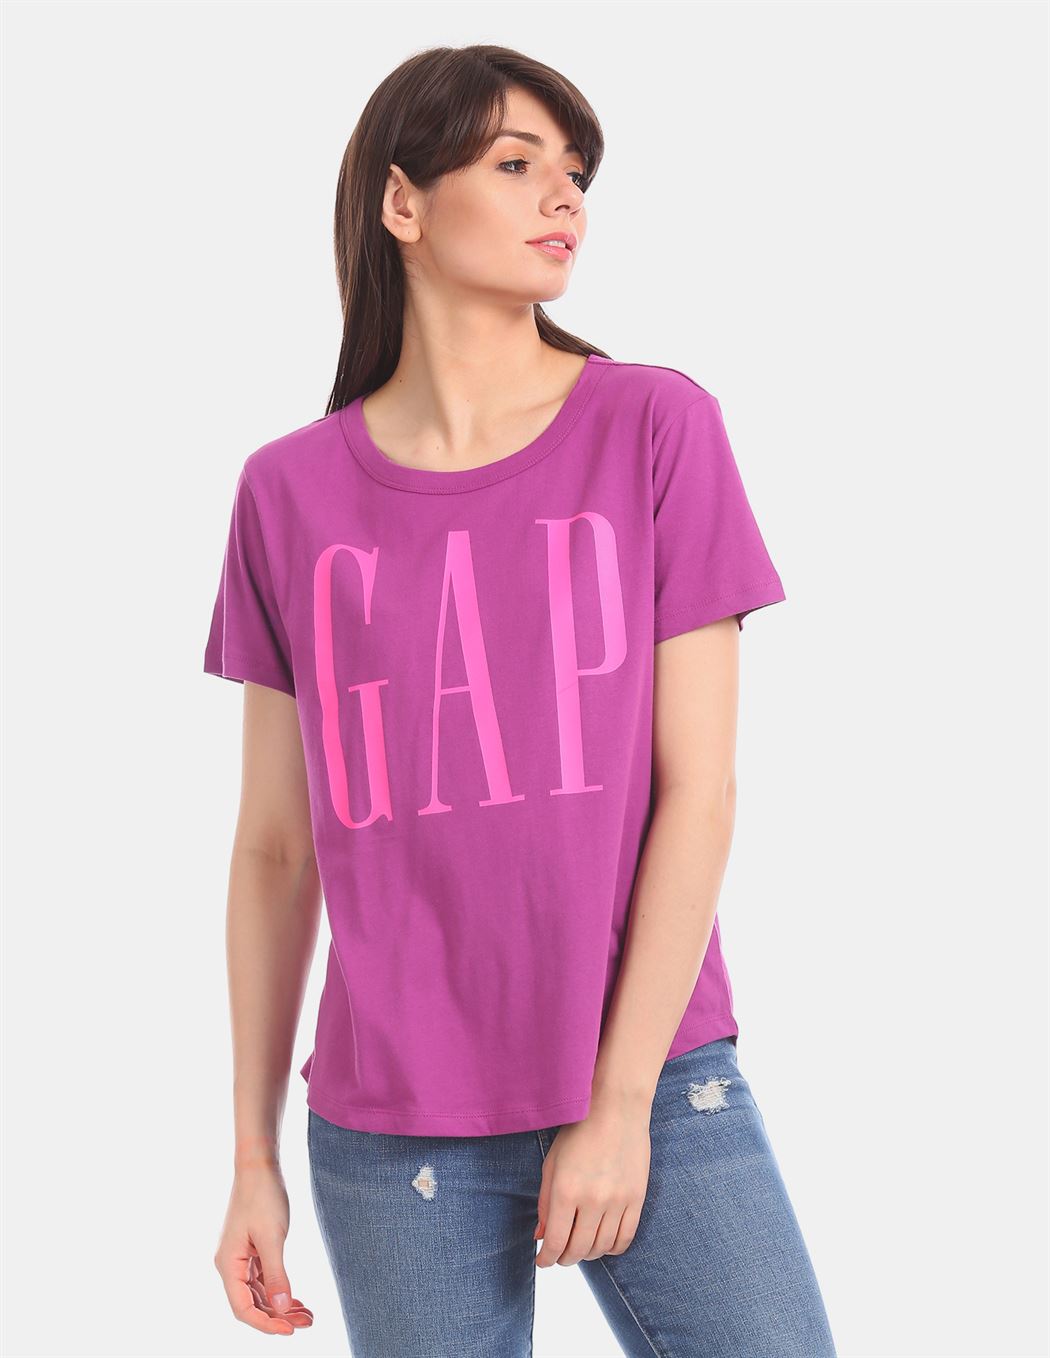 Gap Women's Casual Wear T-Shirt